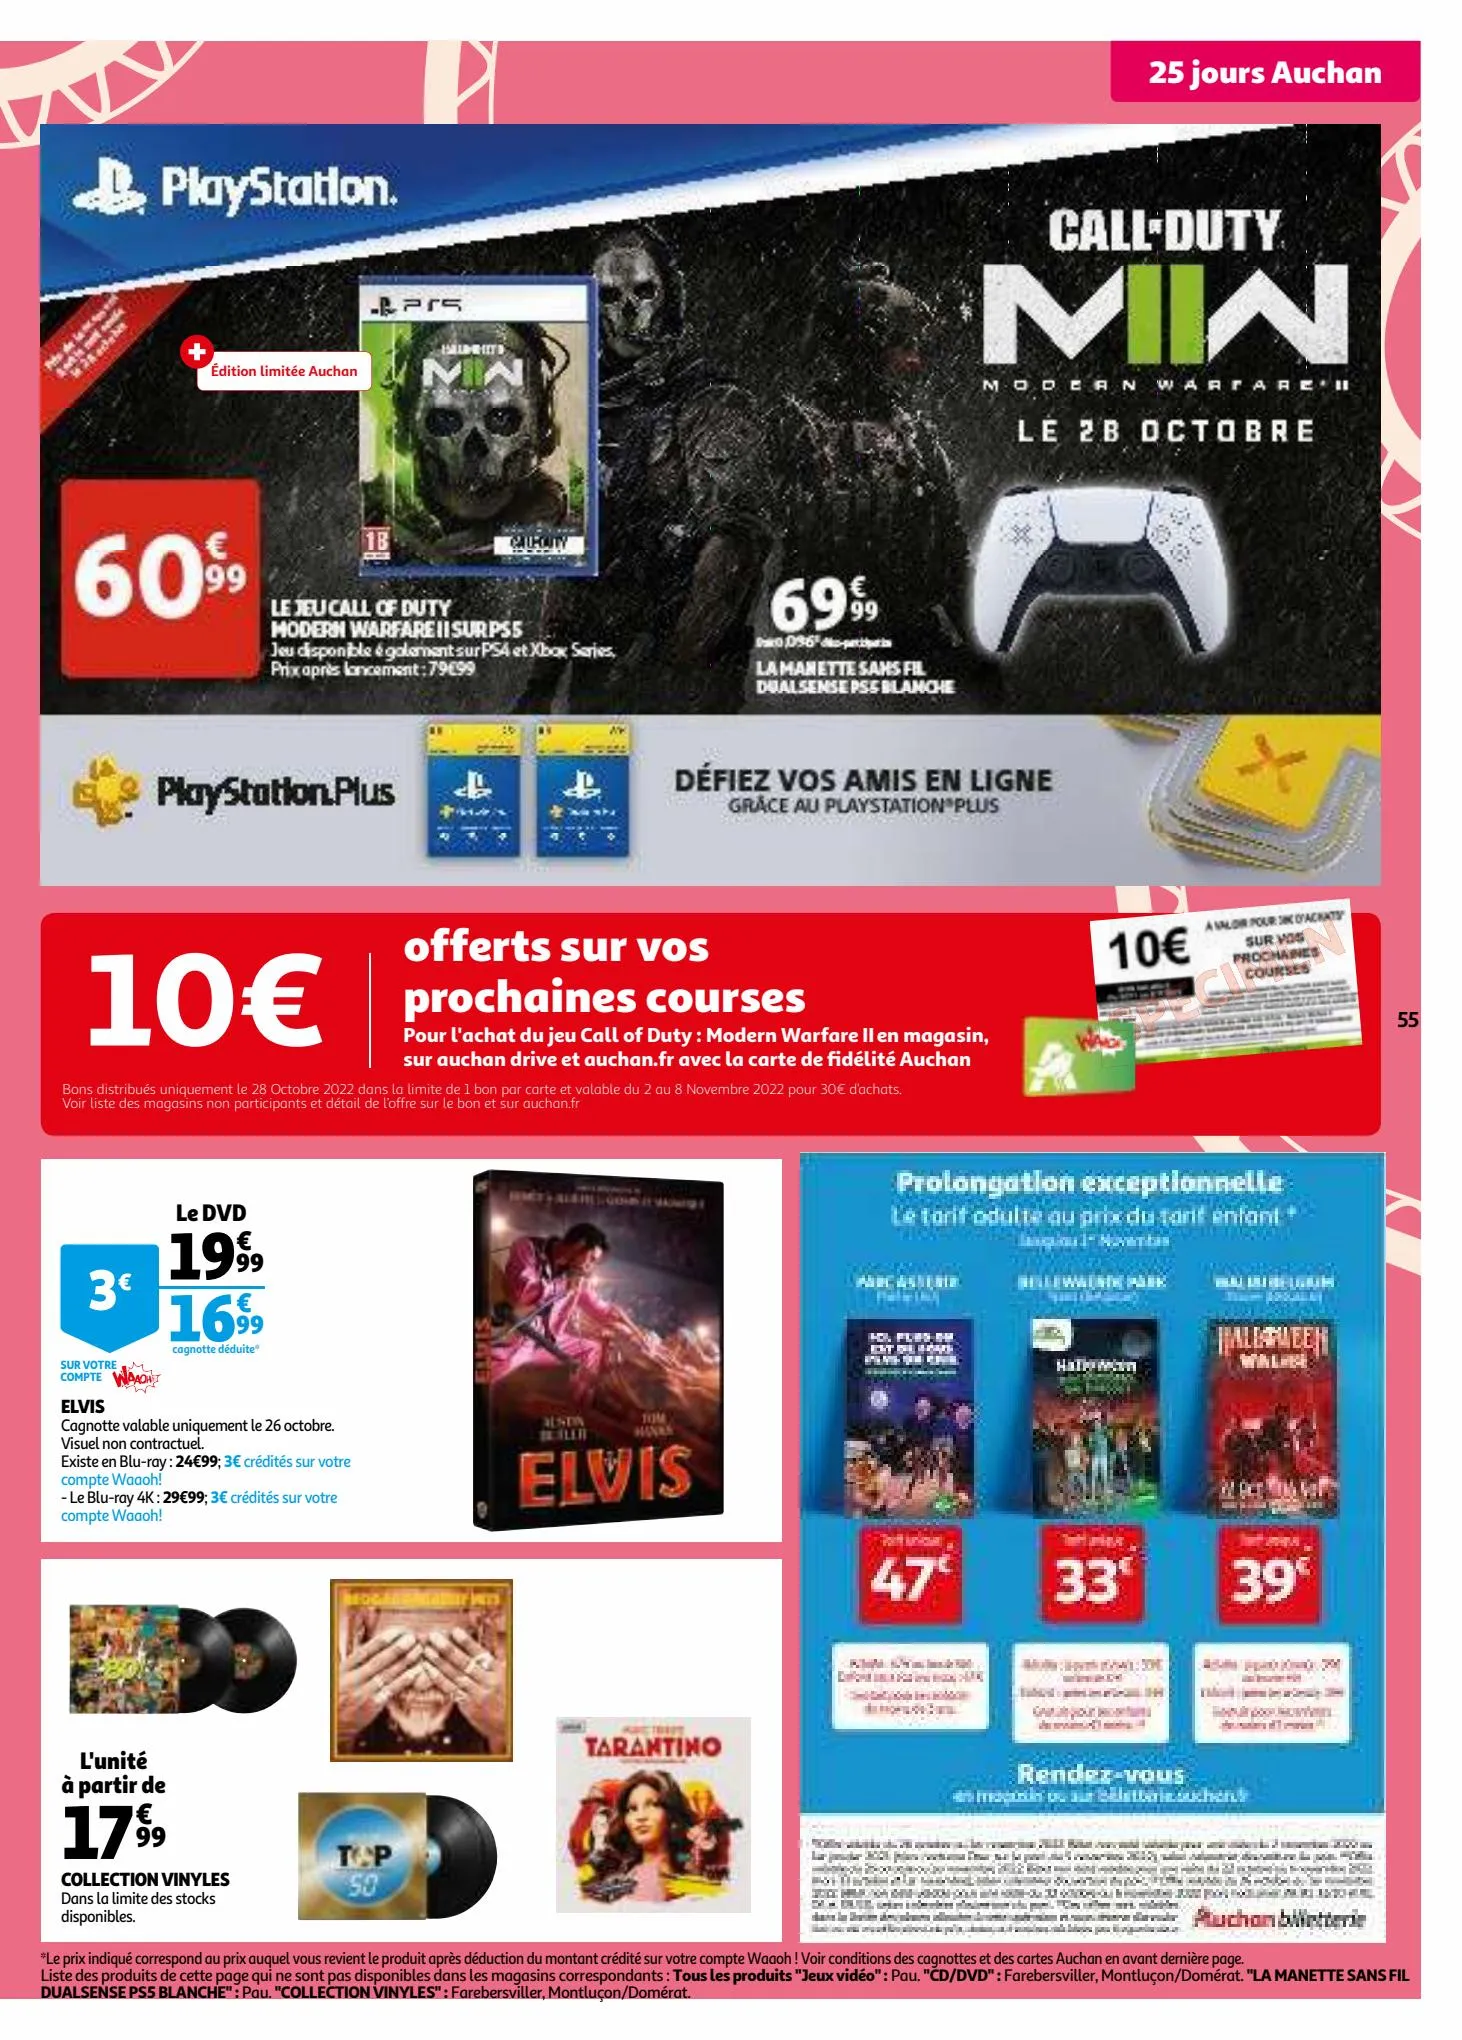 Catalogue 25 jours Auchan, page 00055